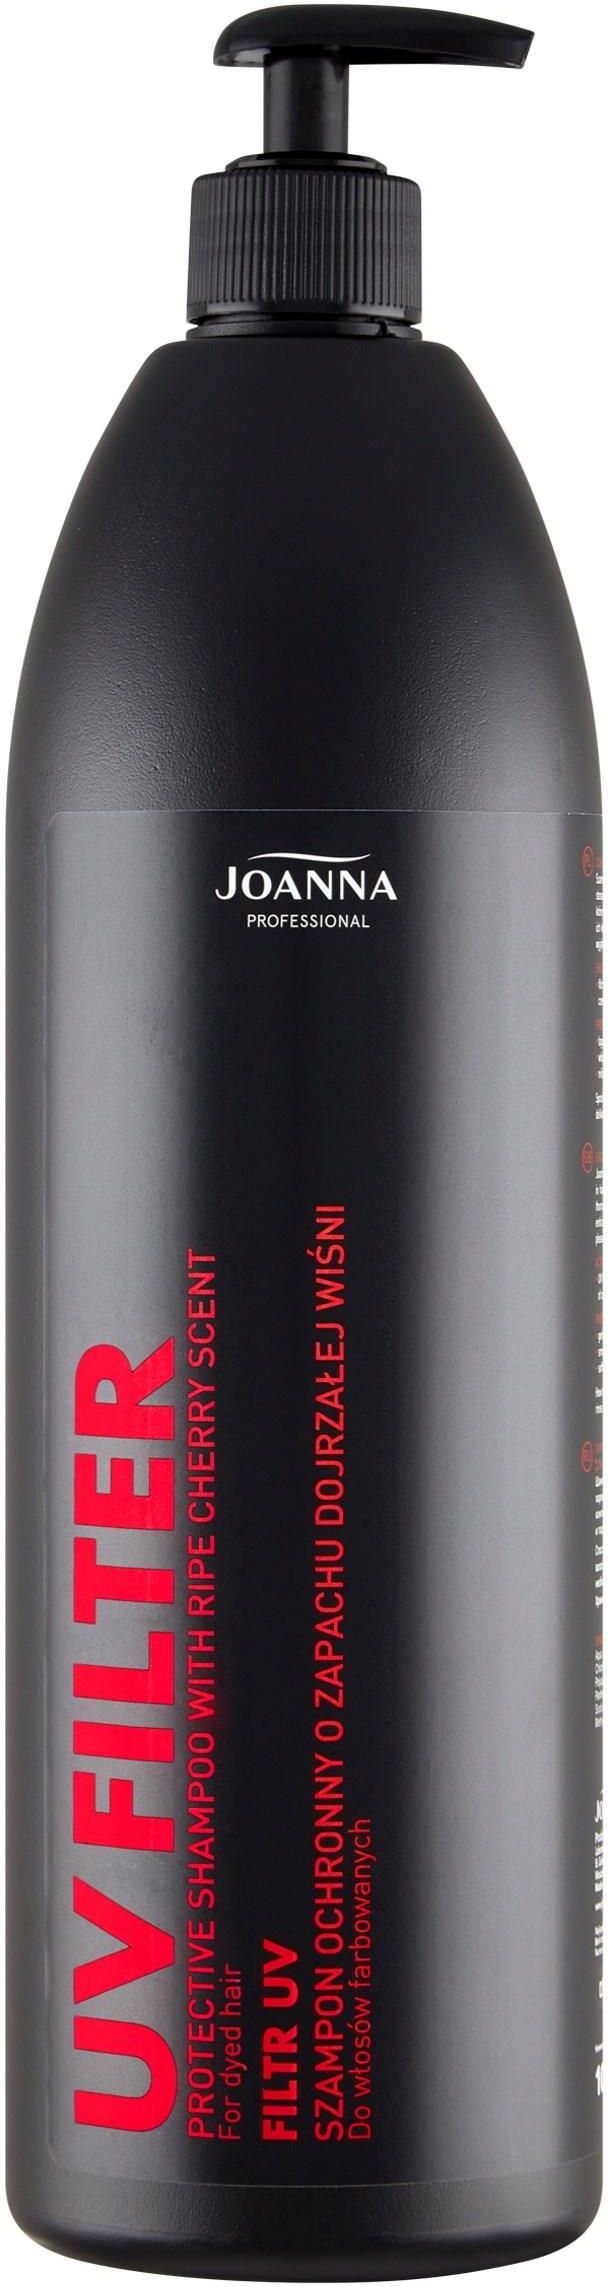 joanna szampon z wisnia